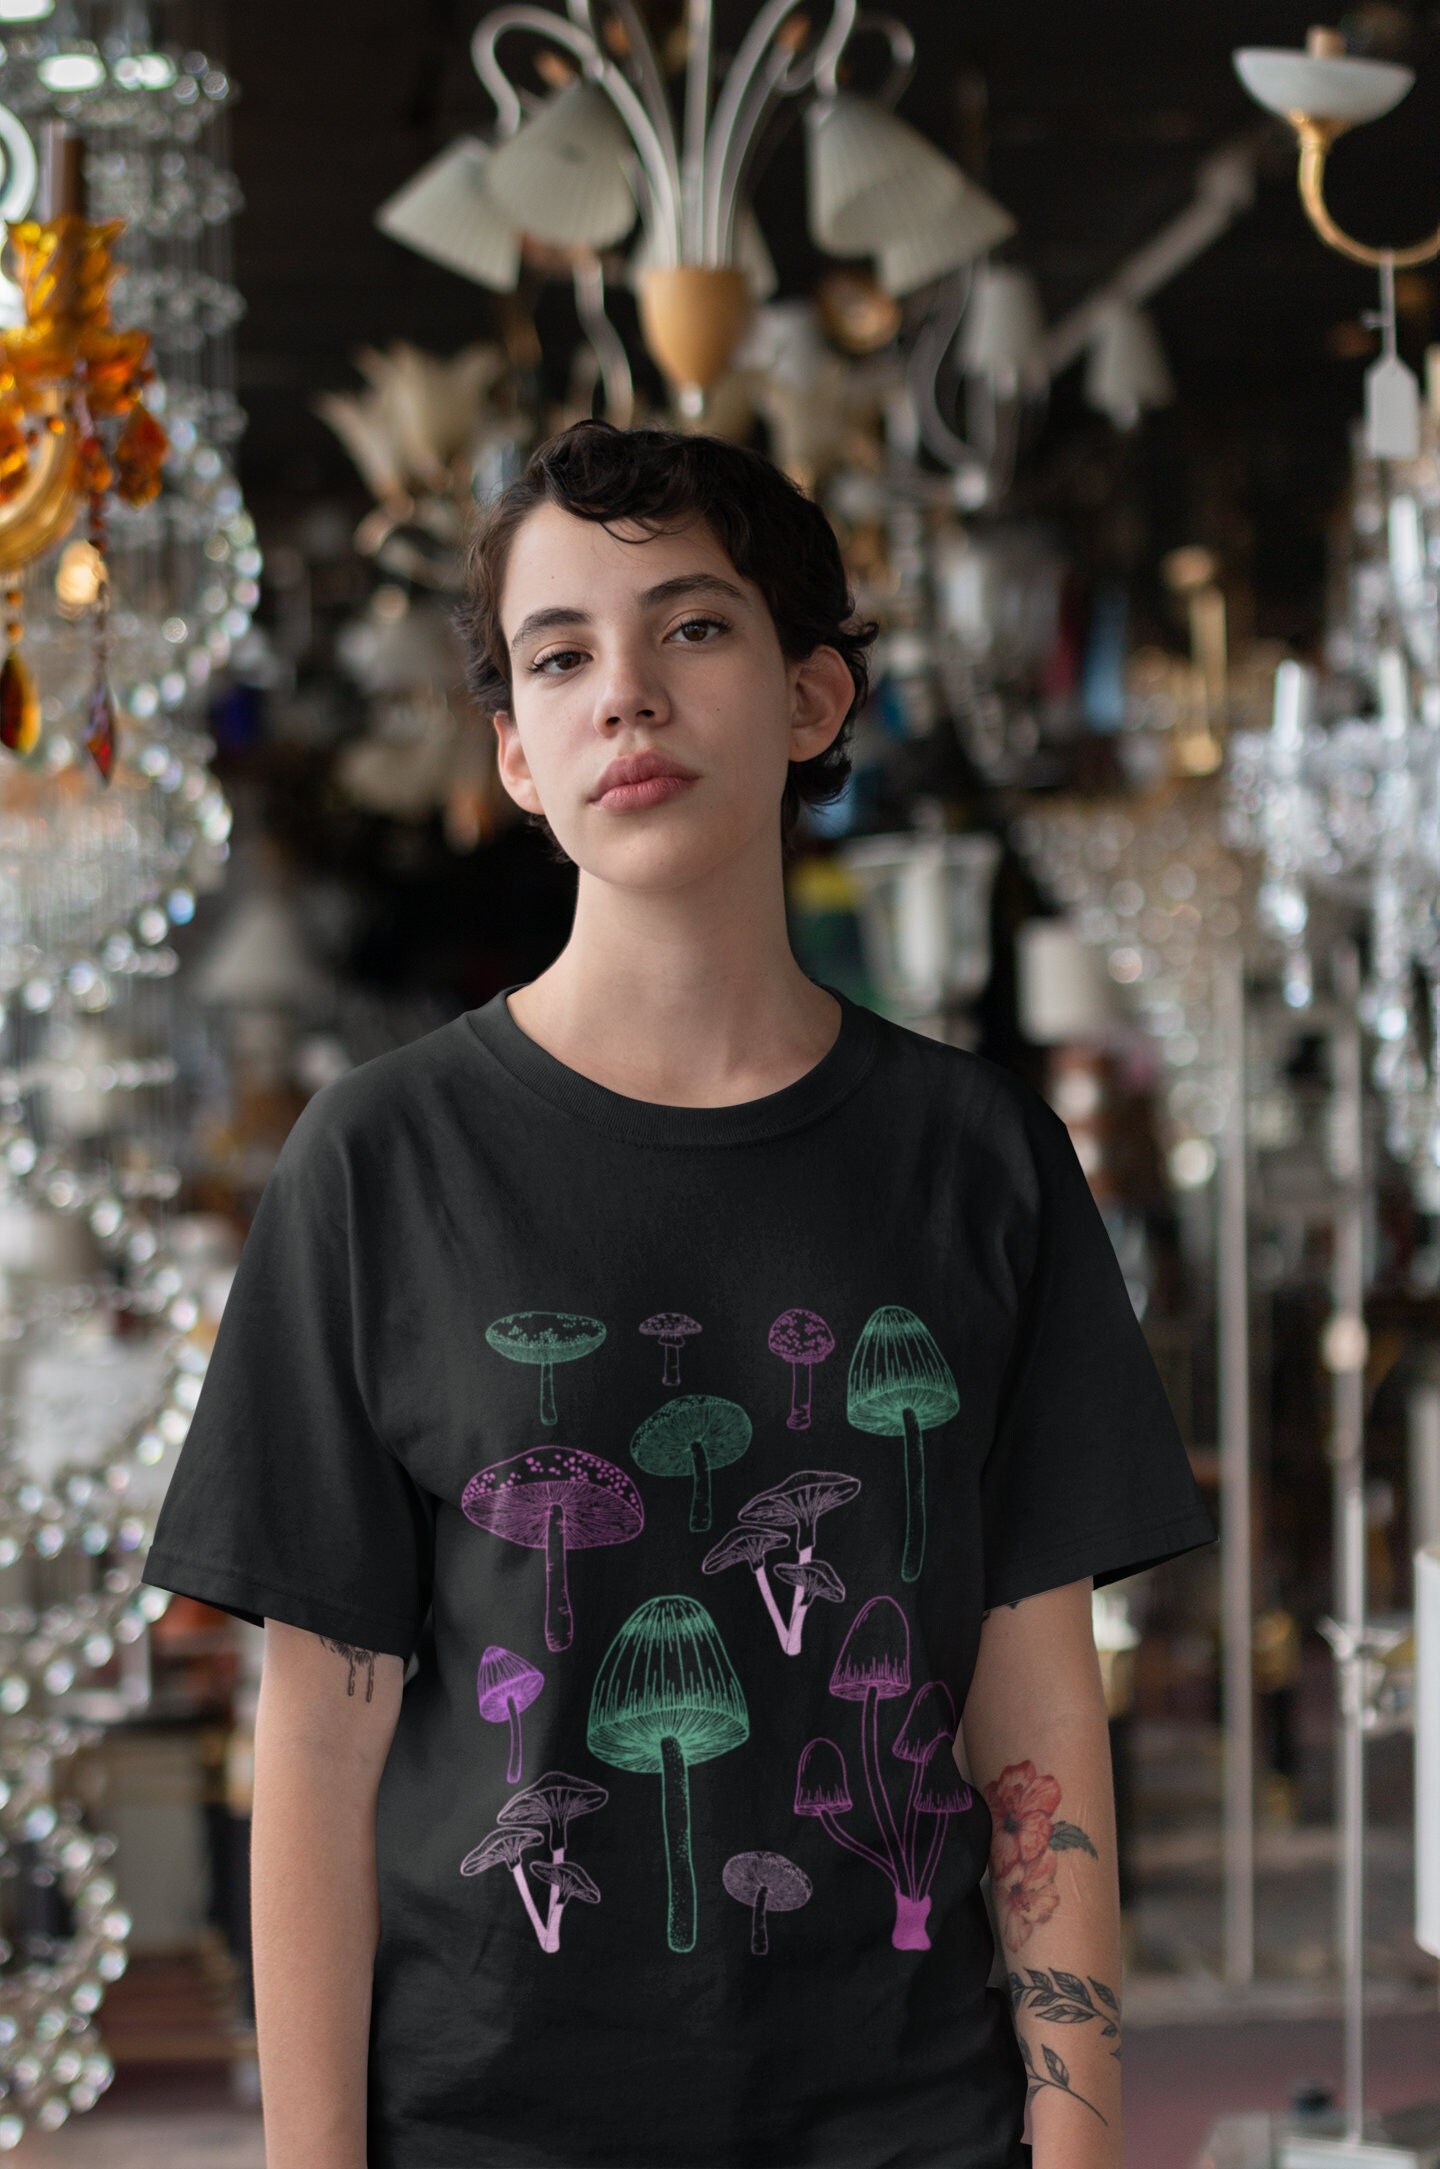  Weirdcore - Camiseta estética con ojos de hongos